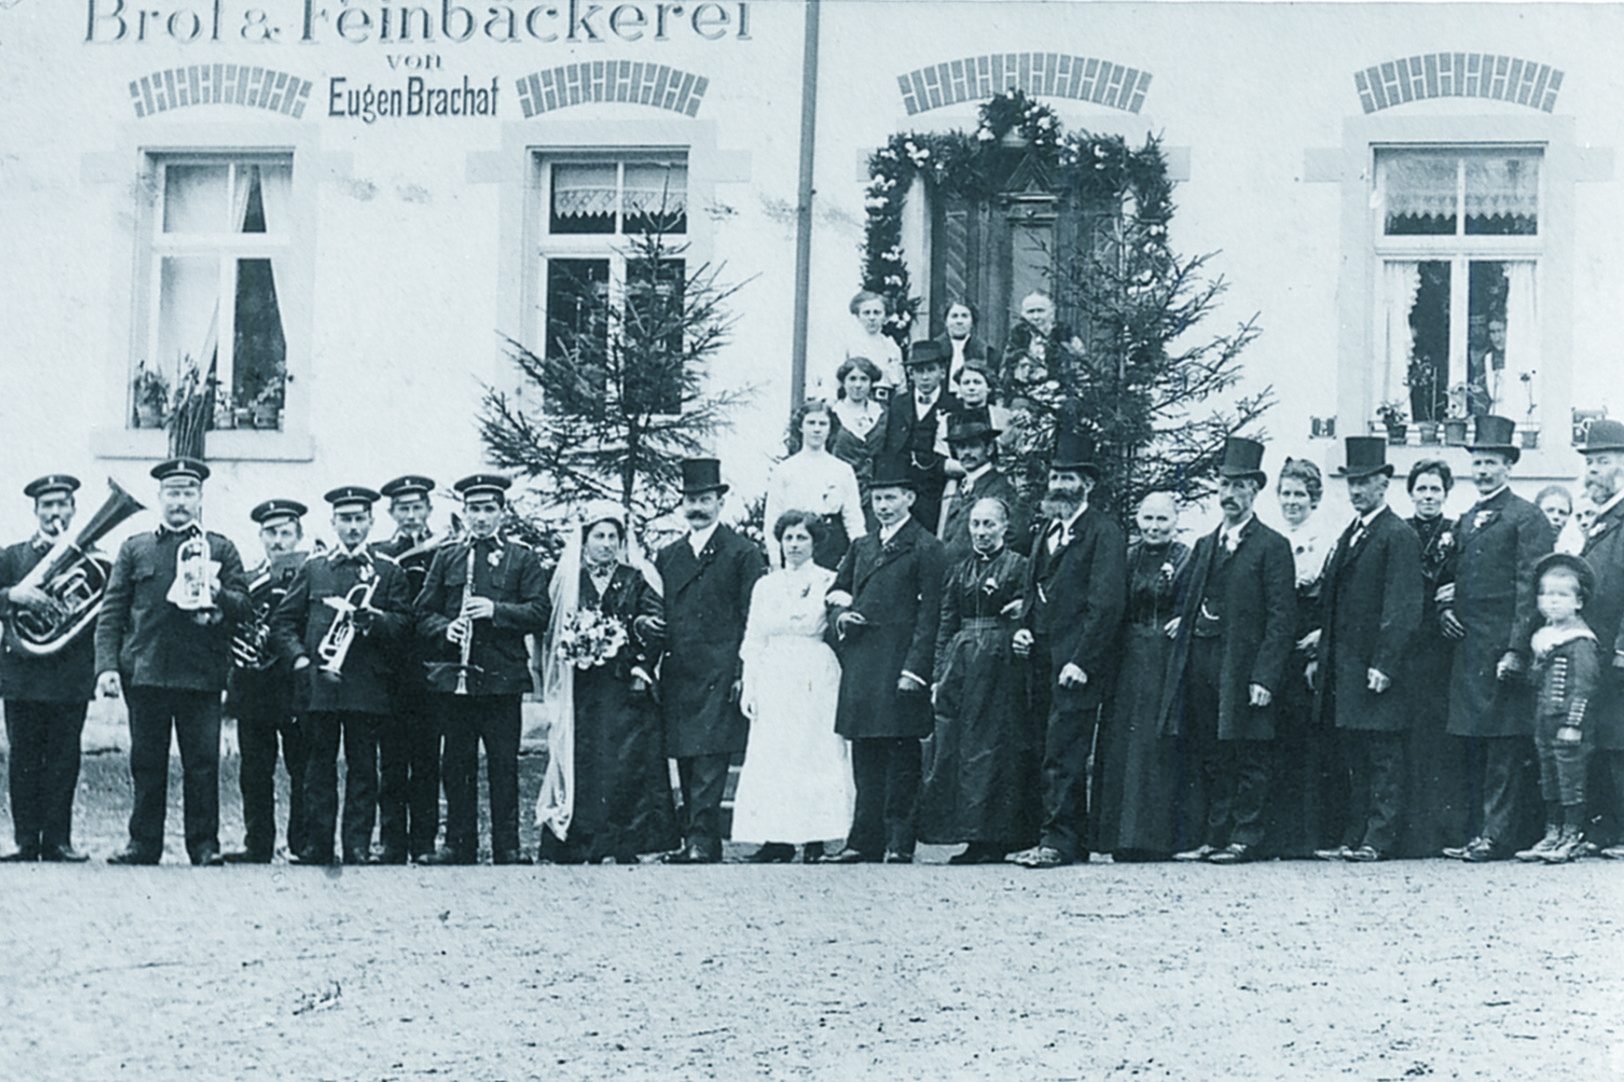  20. November 1913 erstes Foto Musikverein Dingelsdorf anlässlich der Hochzeit Eugen Brachat und seiner Frau Anna 